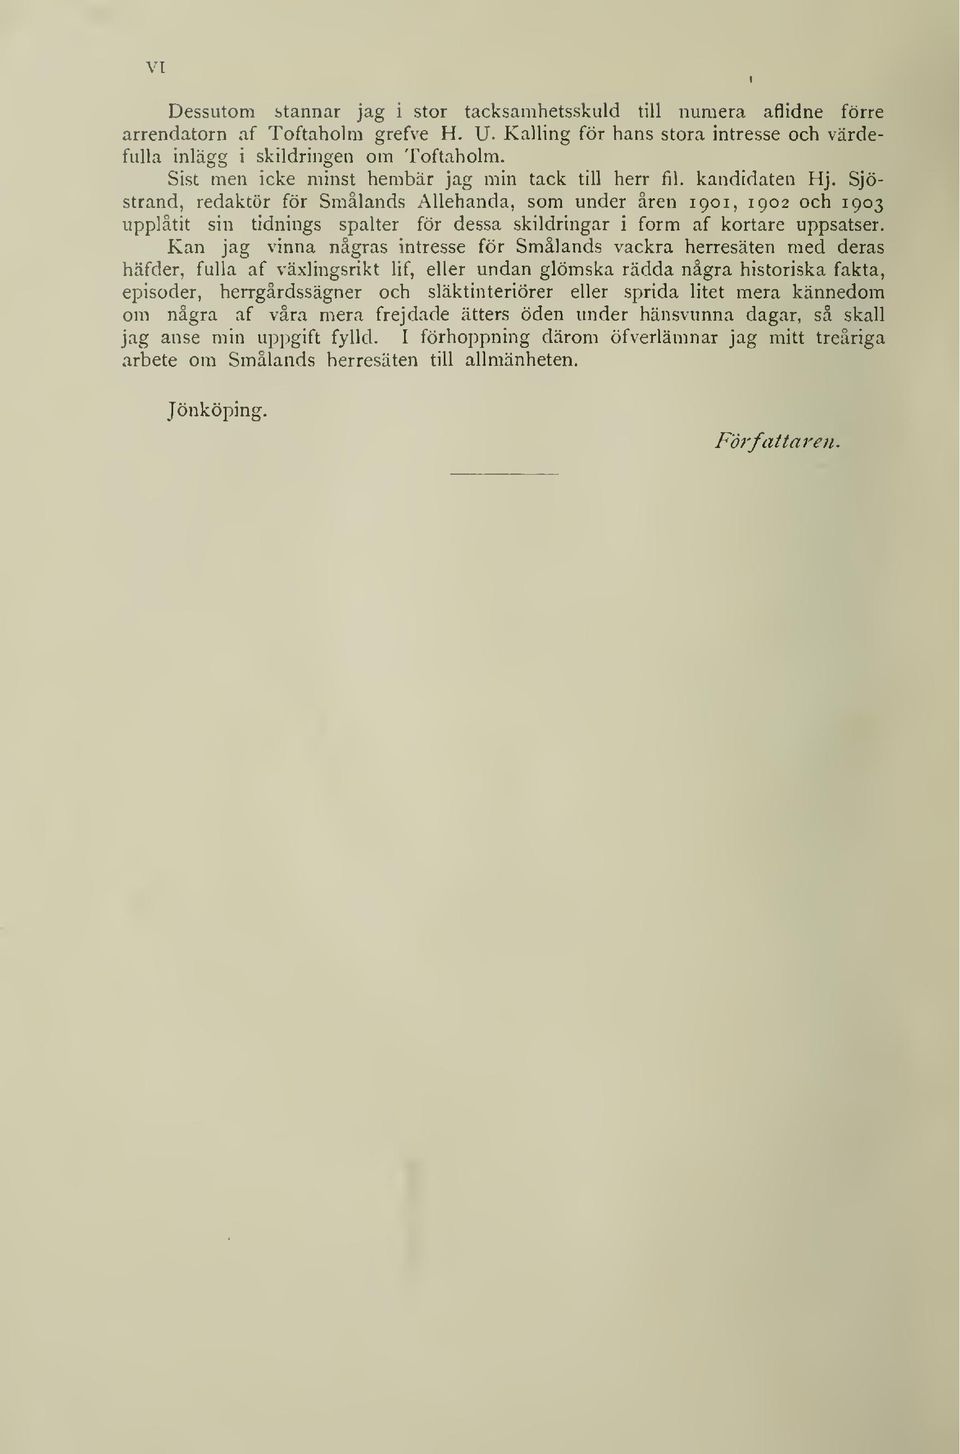 Sjöstrand, redaktör för Smålands Allehanda, som under åren 1901, 1902 och 1903 upplåtit sin tidnings spalter för dessa skildringar i form af kortare uppsatser.